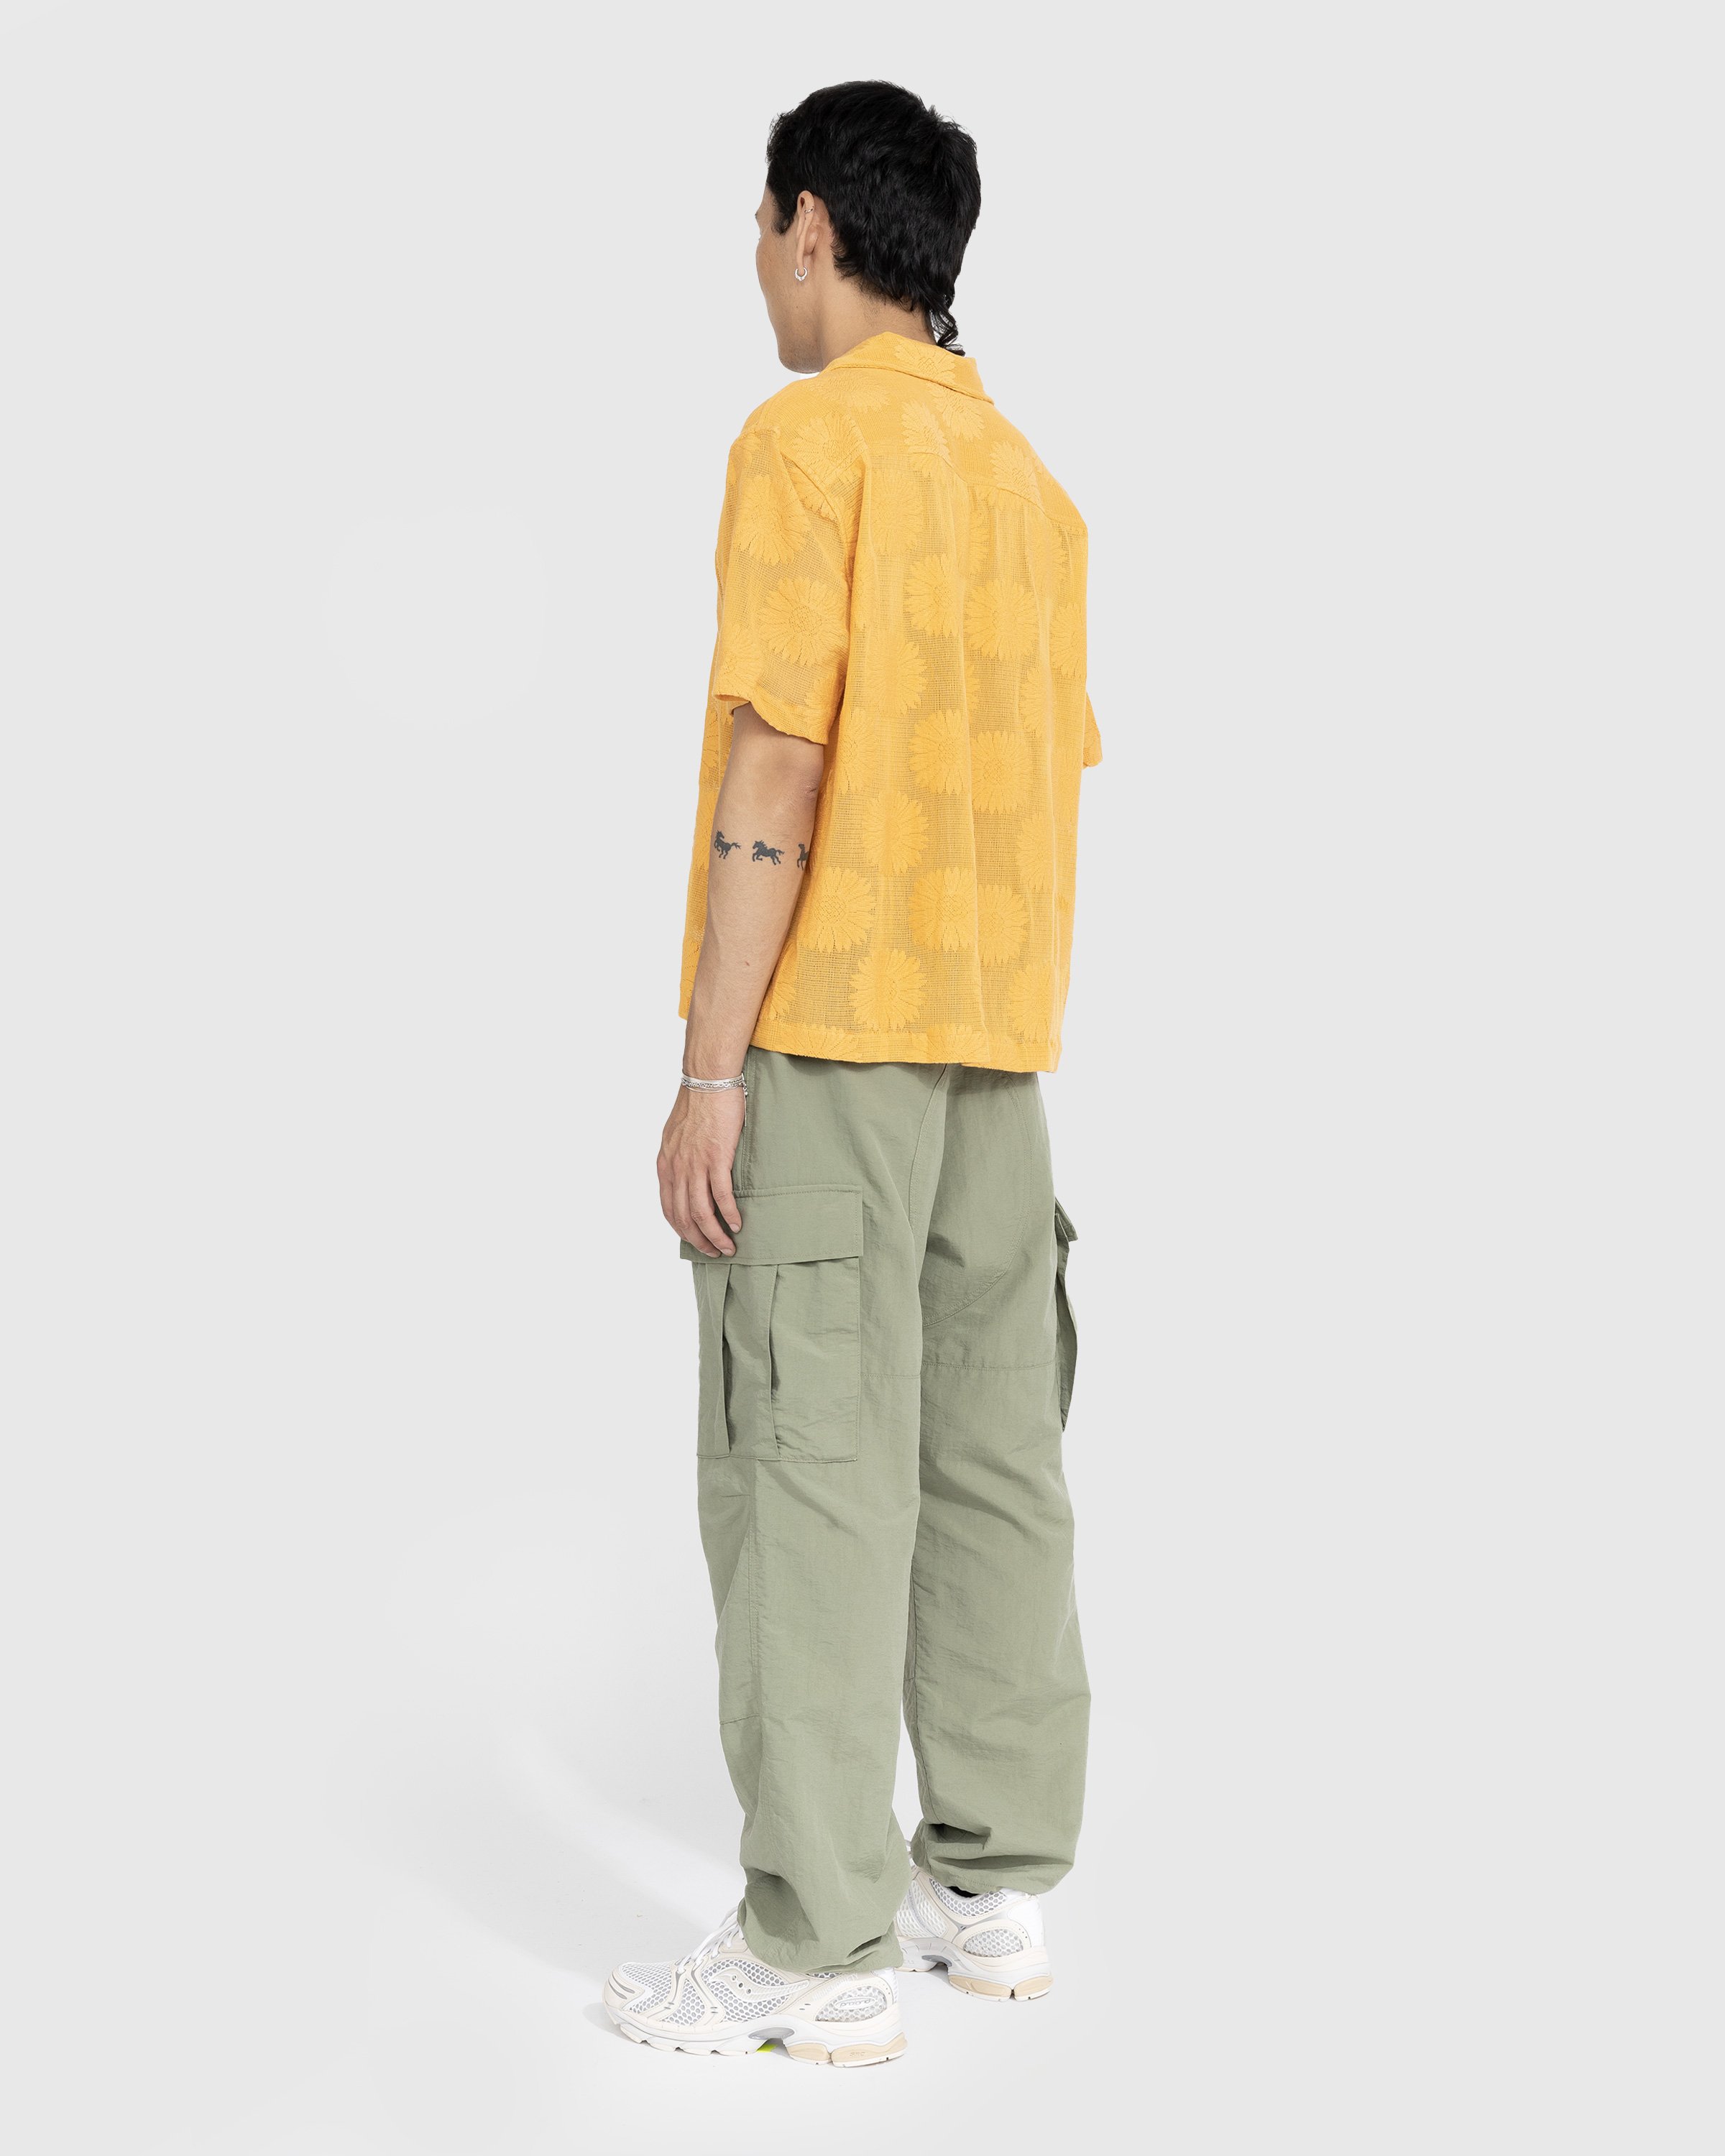 Bode - Sunflower Lace Shortsleeve Shirt - Clothing - Yellow - Image 3